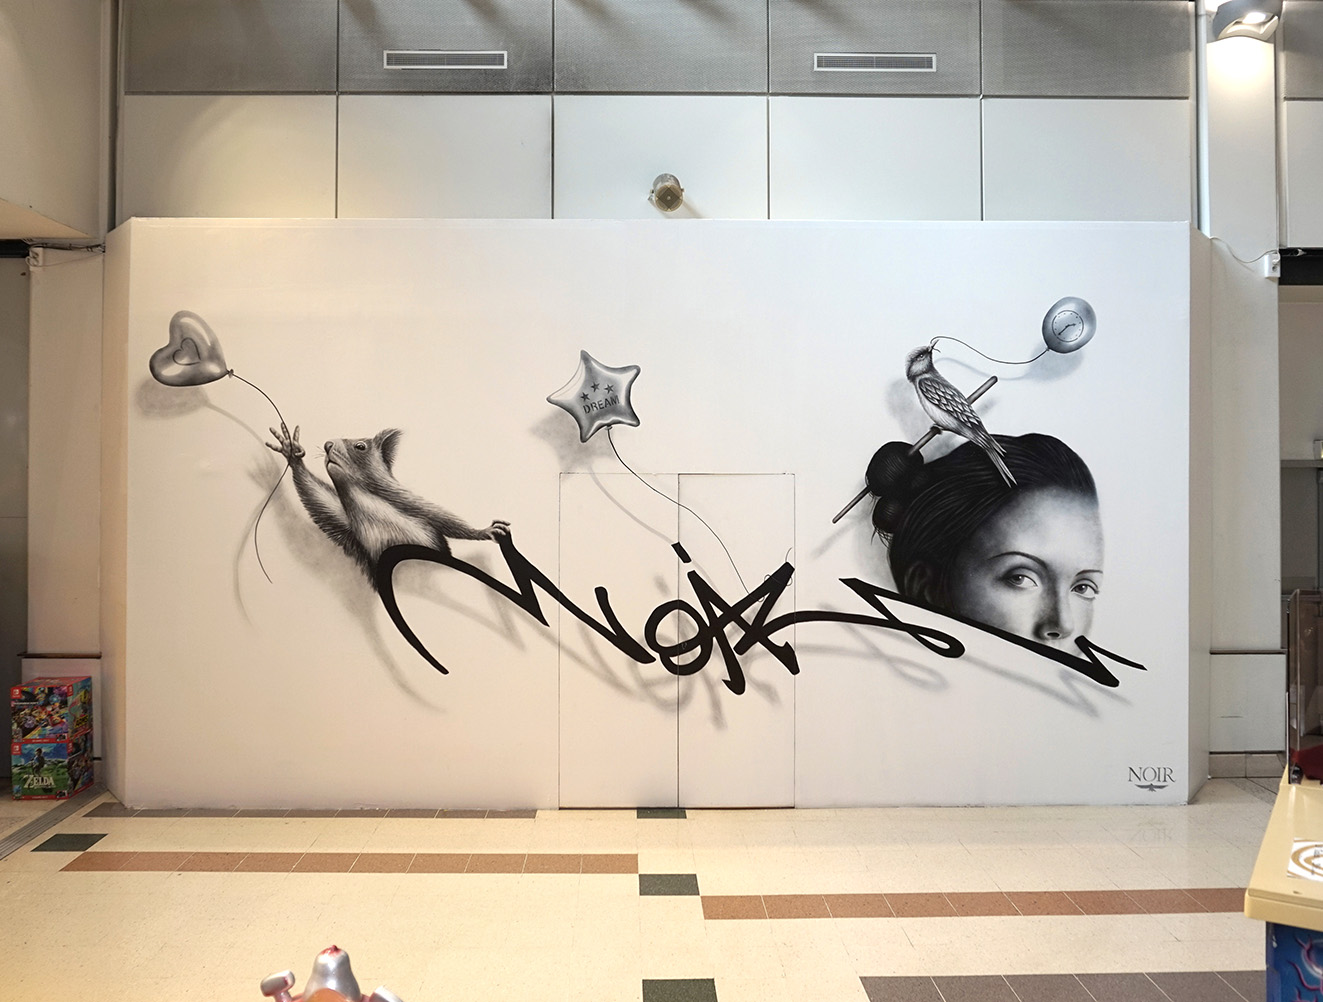 Copie de NOIR artist mural - Anamorphose Project - Paris Bercy 2